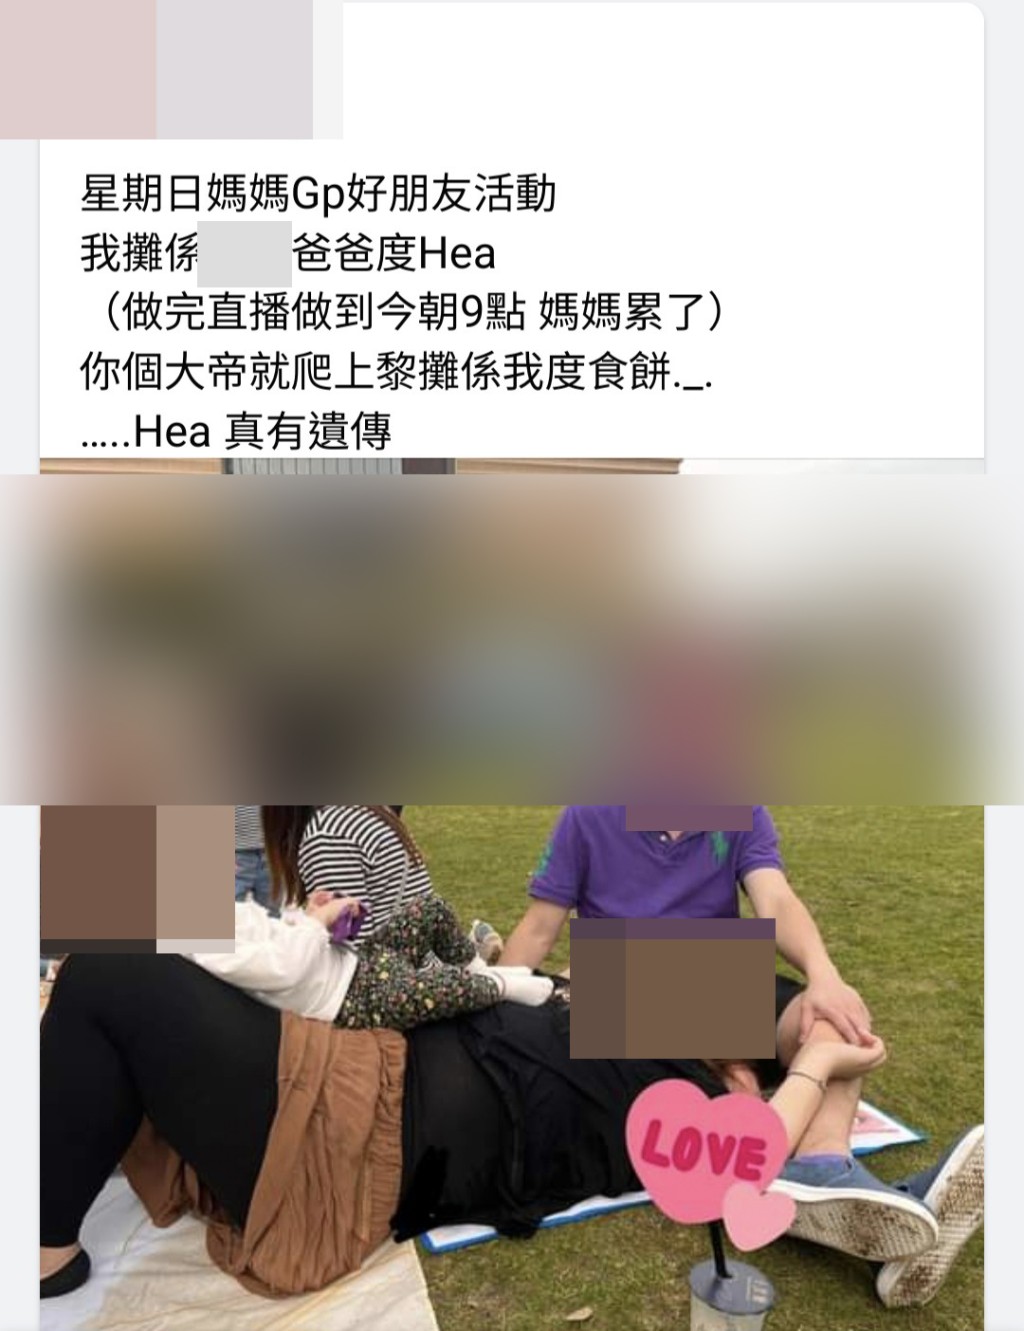 網民亦找到該港媽開設的FB專頁，專頁有不少港媽一家合照。